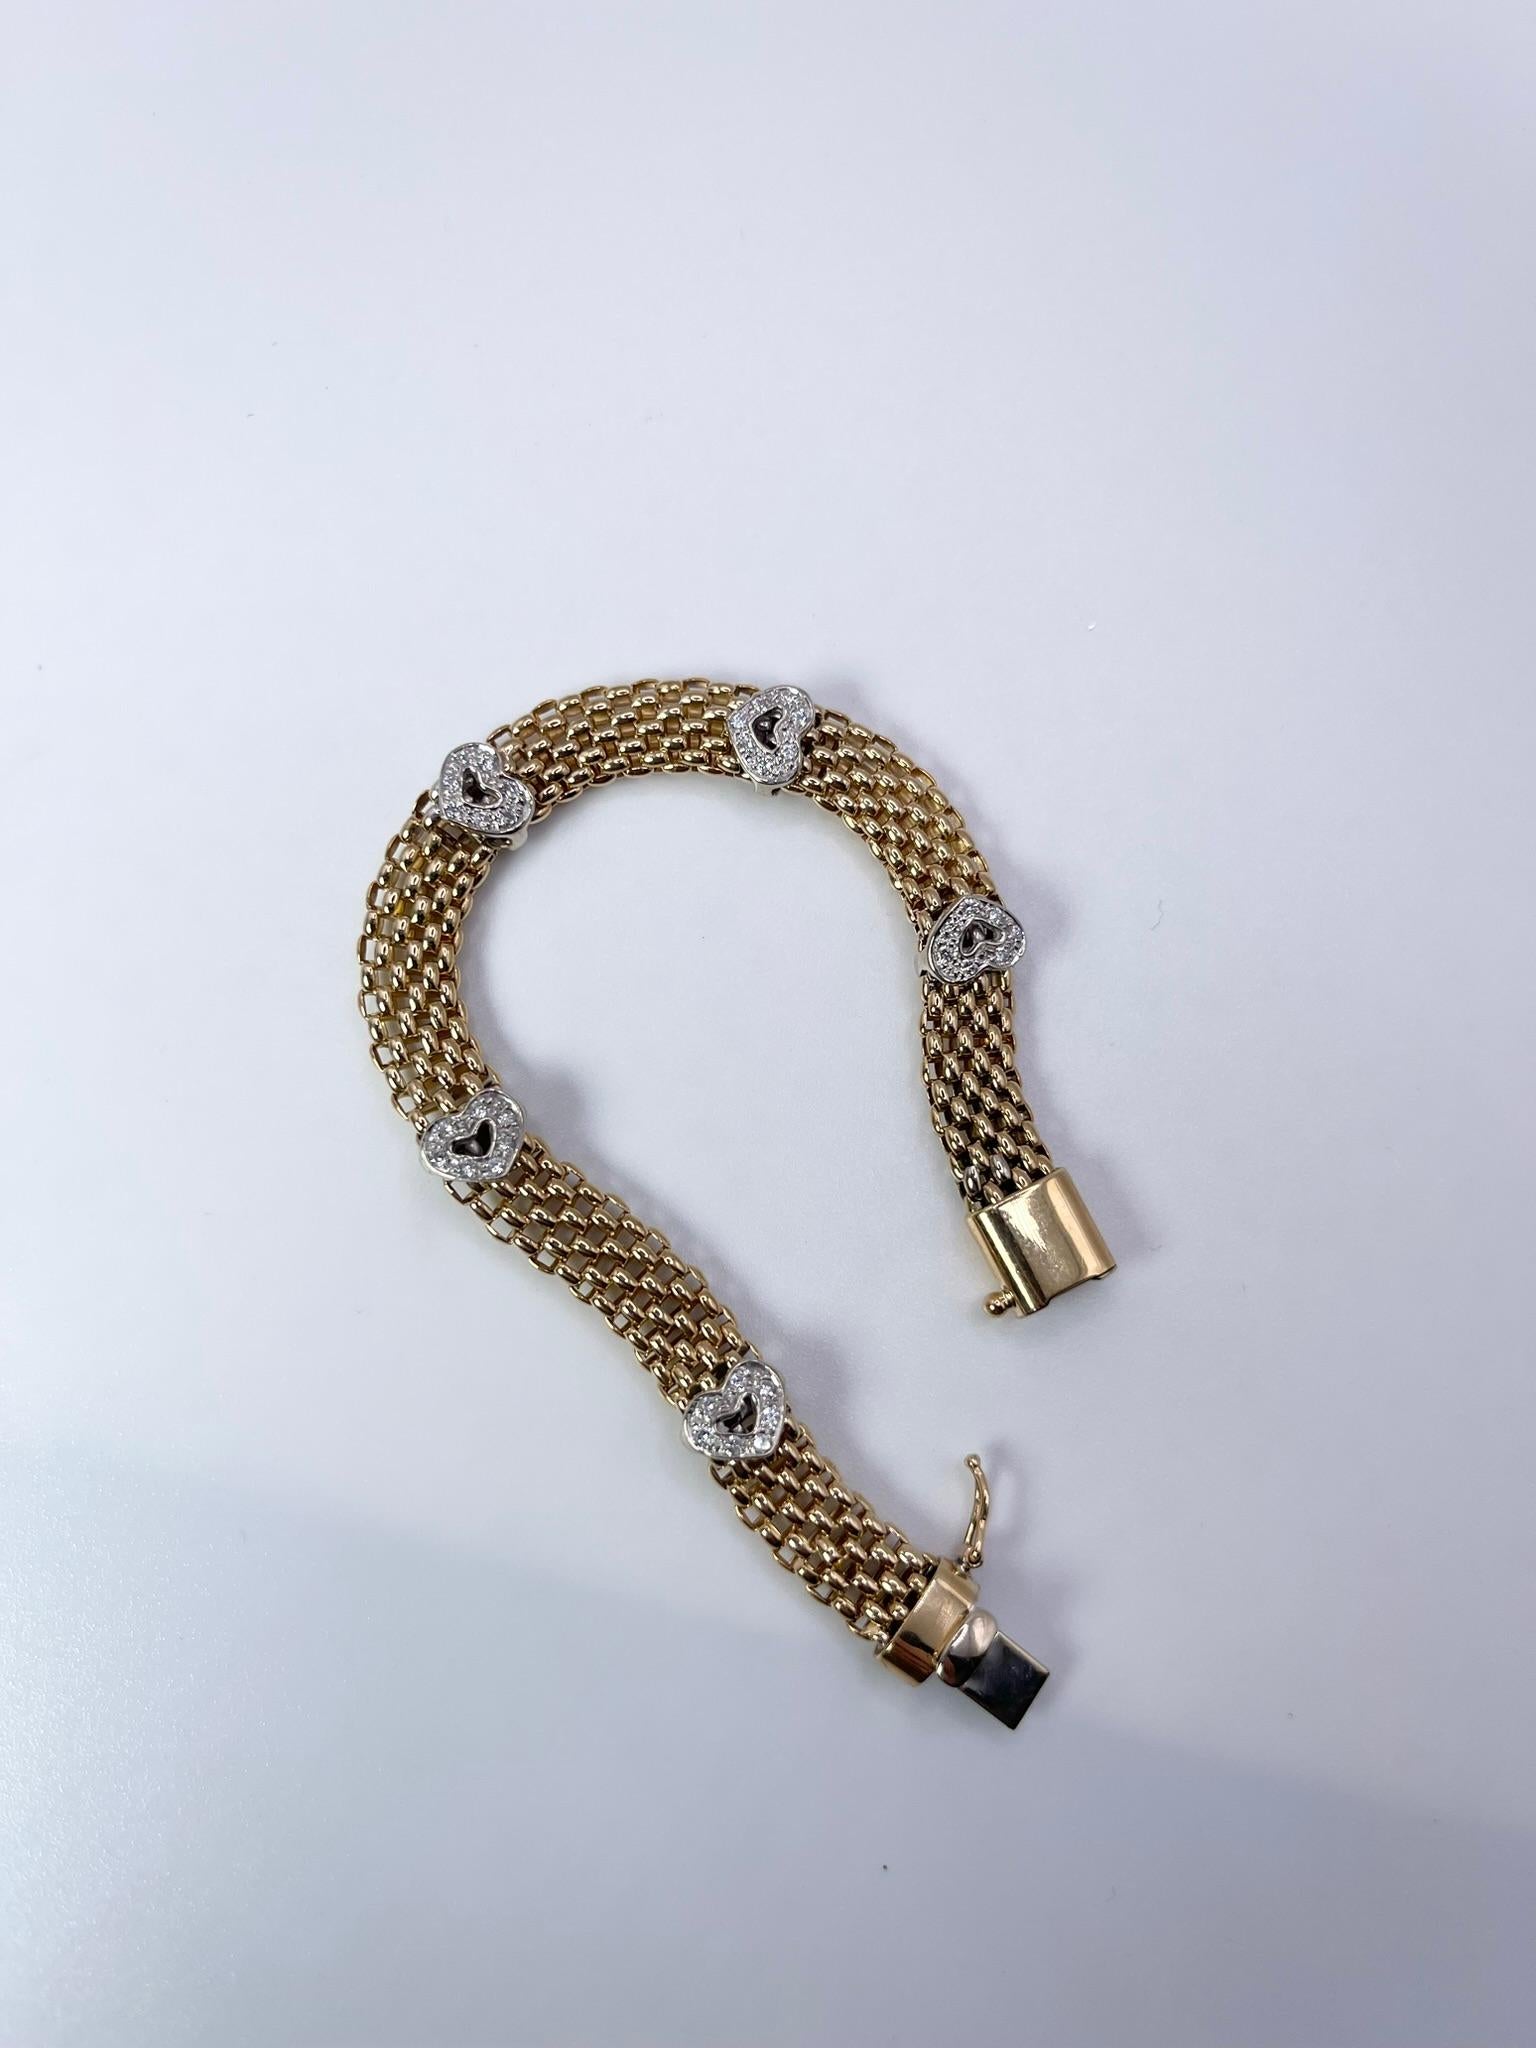 Modernist Heart Diamond bracelet 18KT gold mesh modern bracelet 6.50